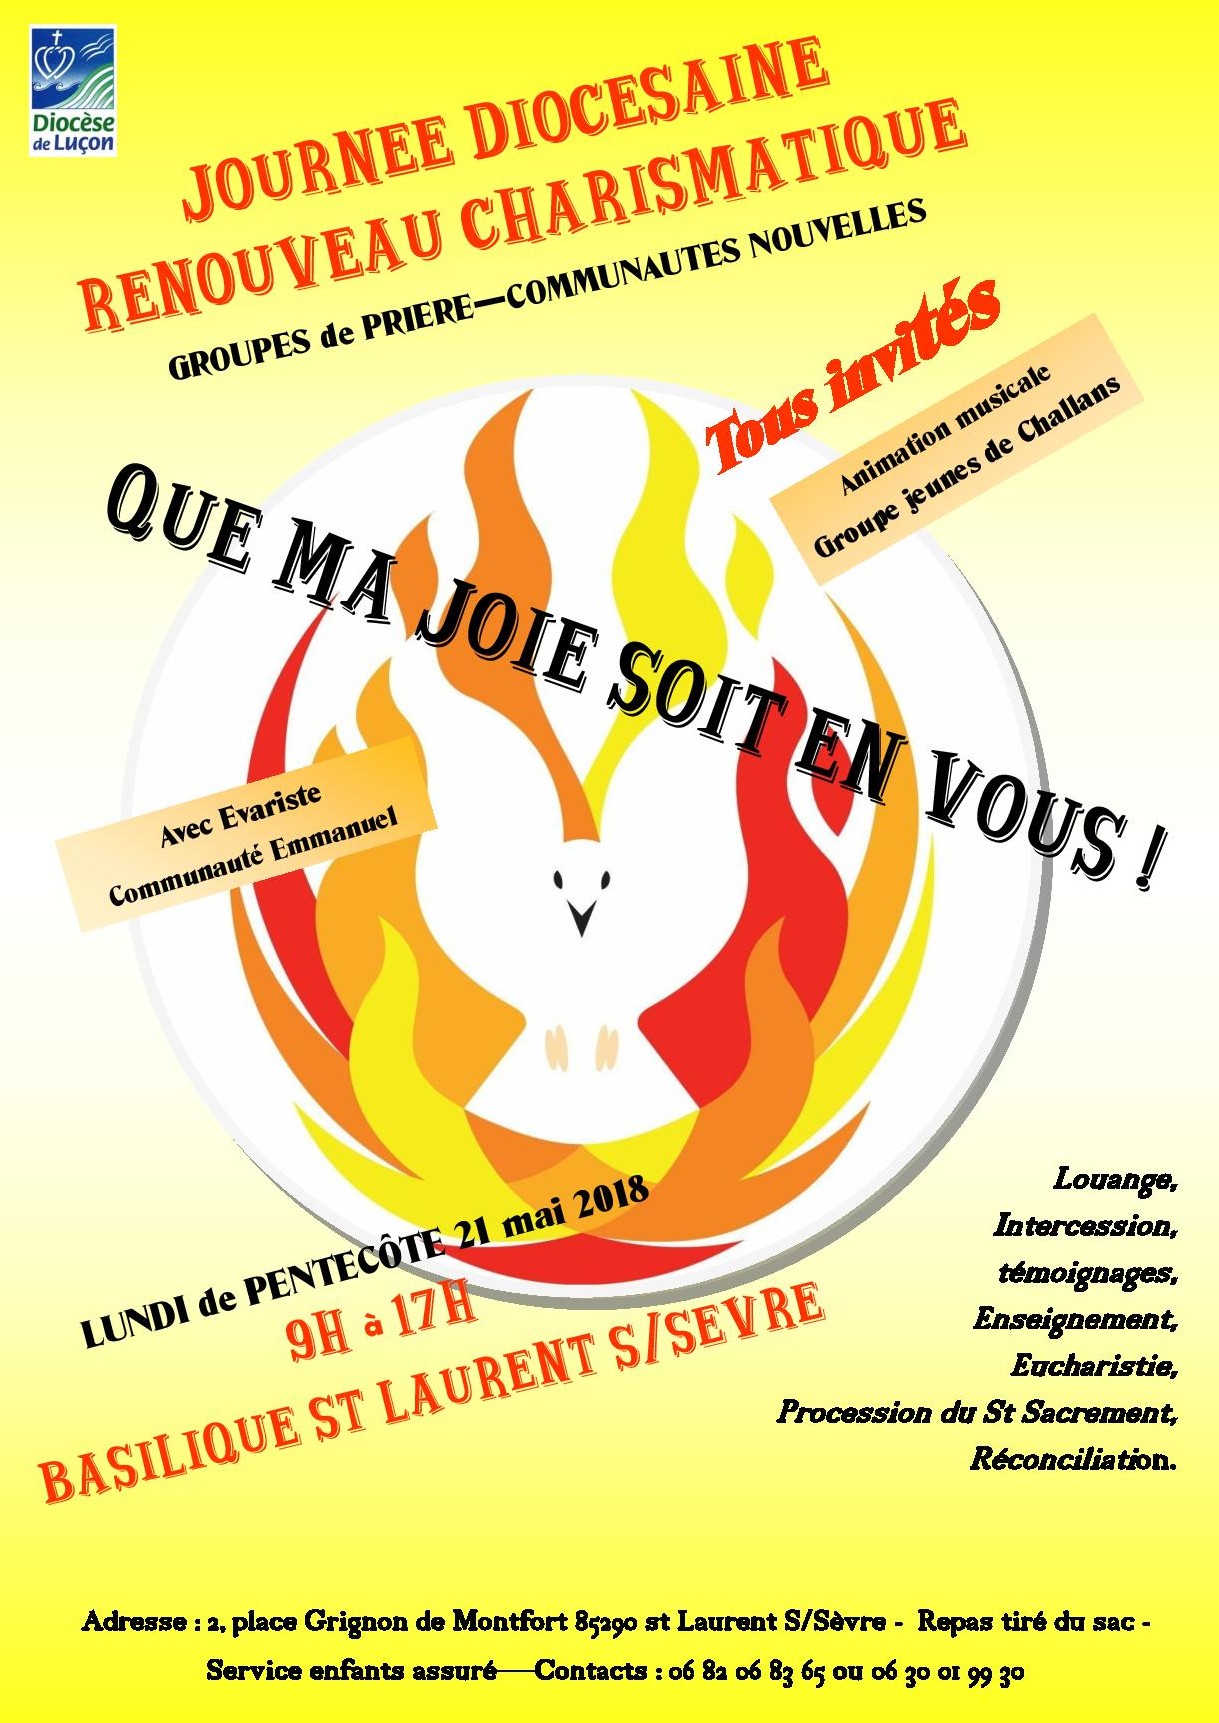 Journée diocésaine (Luçon) Renouveau Charismatique : “Que ma joie soit en vous !” le 21 mai 2018 à St Laurent-sur-Sèvre (85)